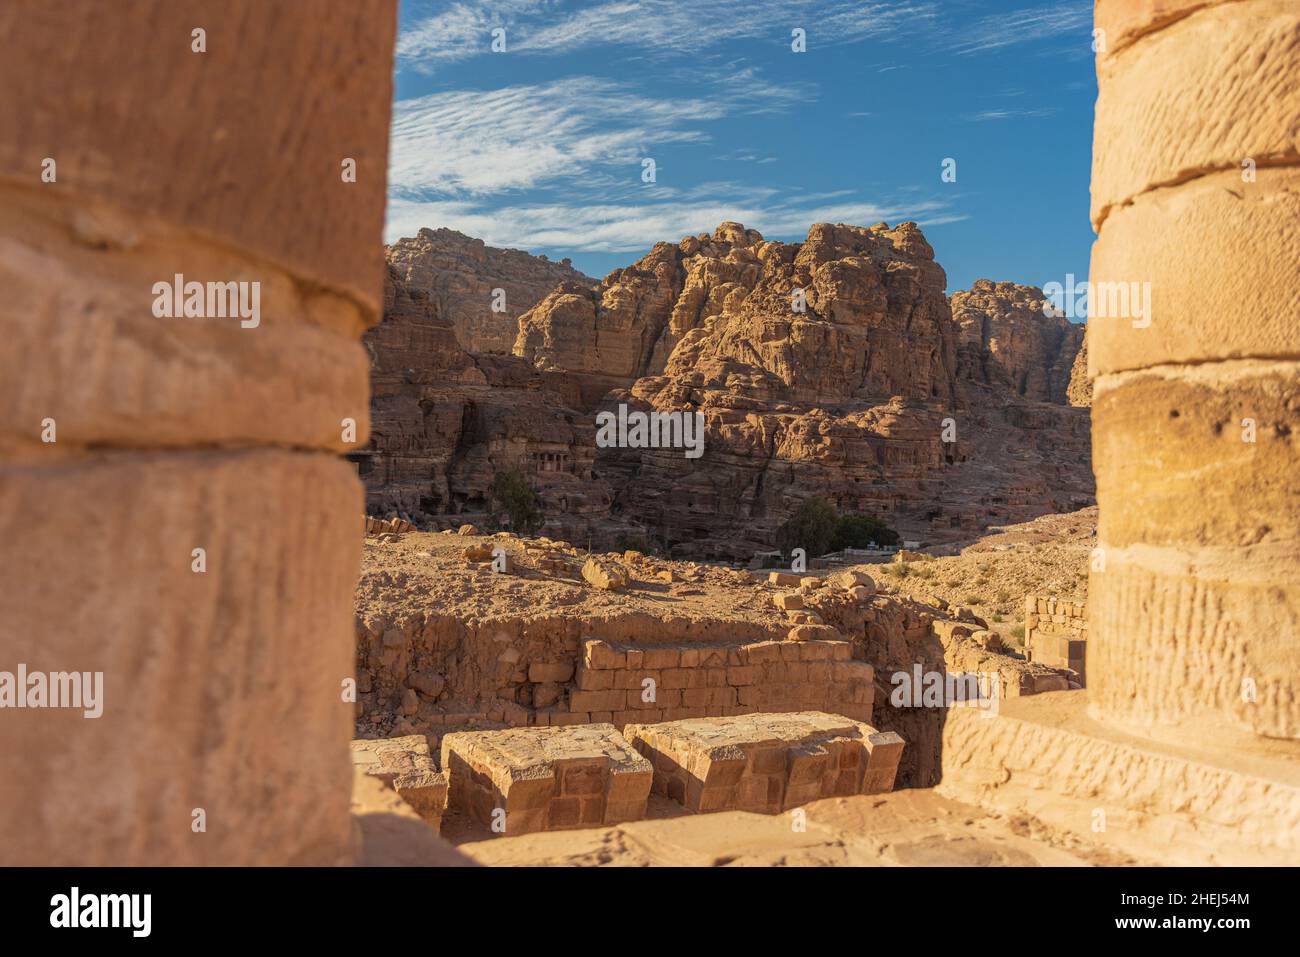 The ancient city of Petra, Jordan Stock Photo